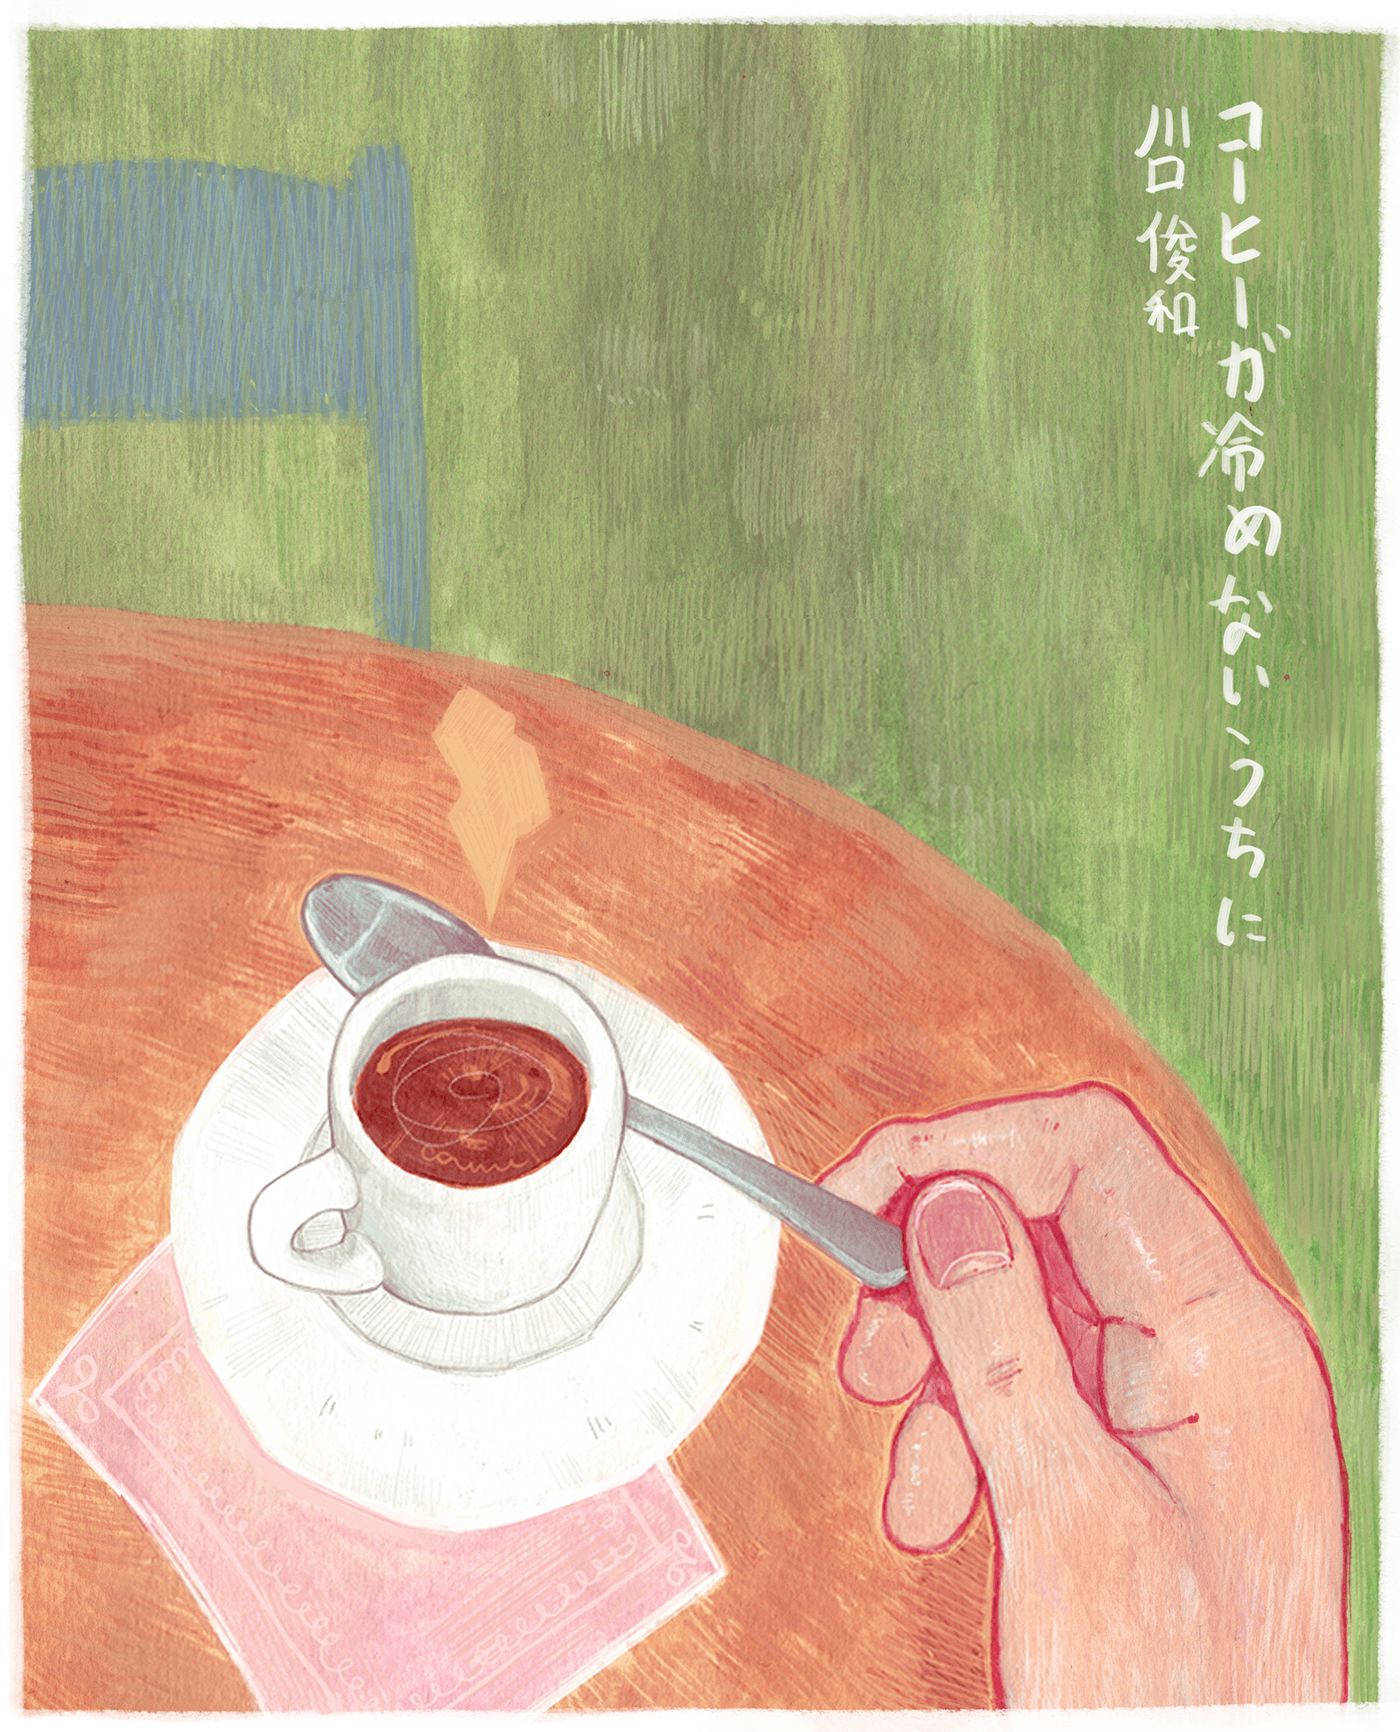 Coffee cover gouache literature